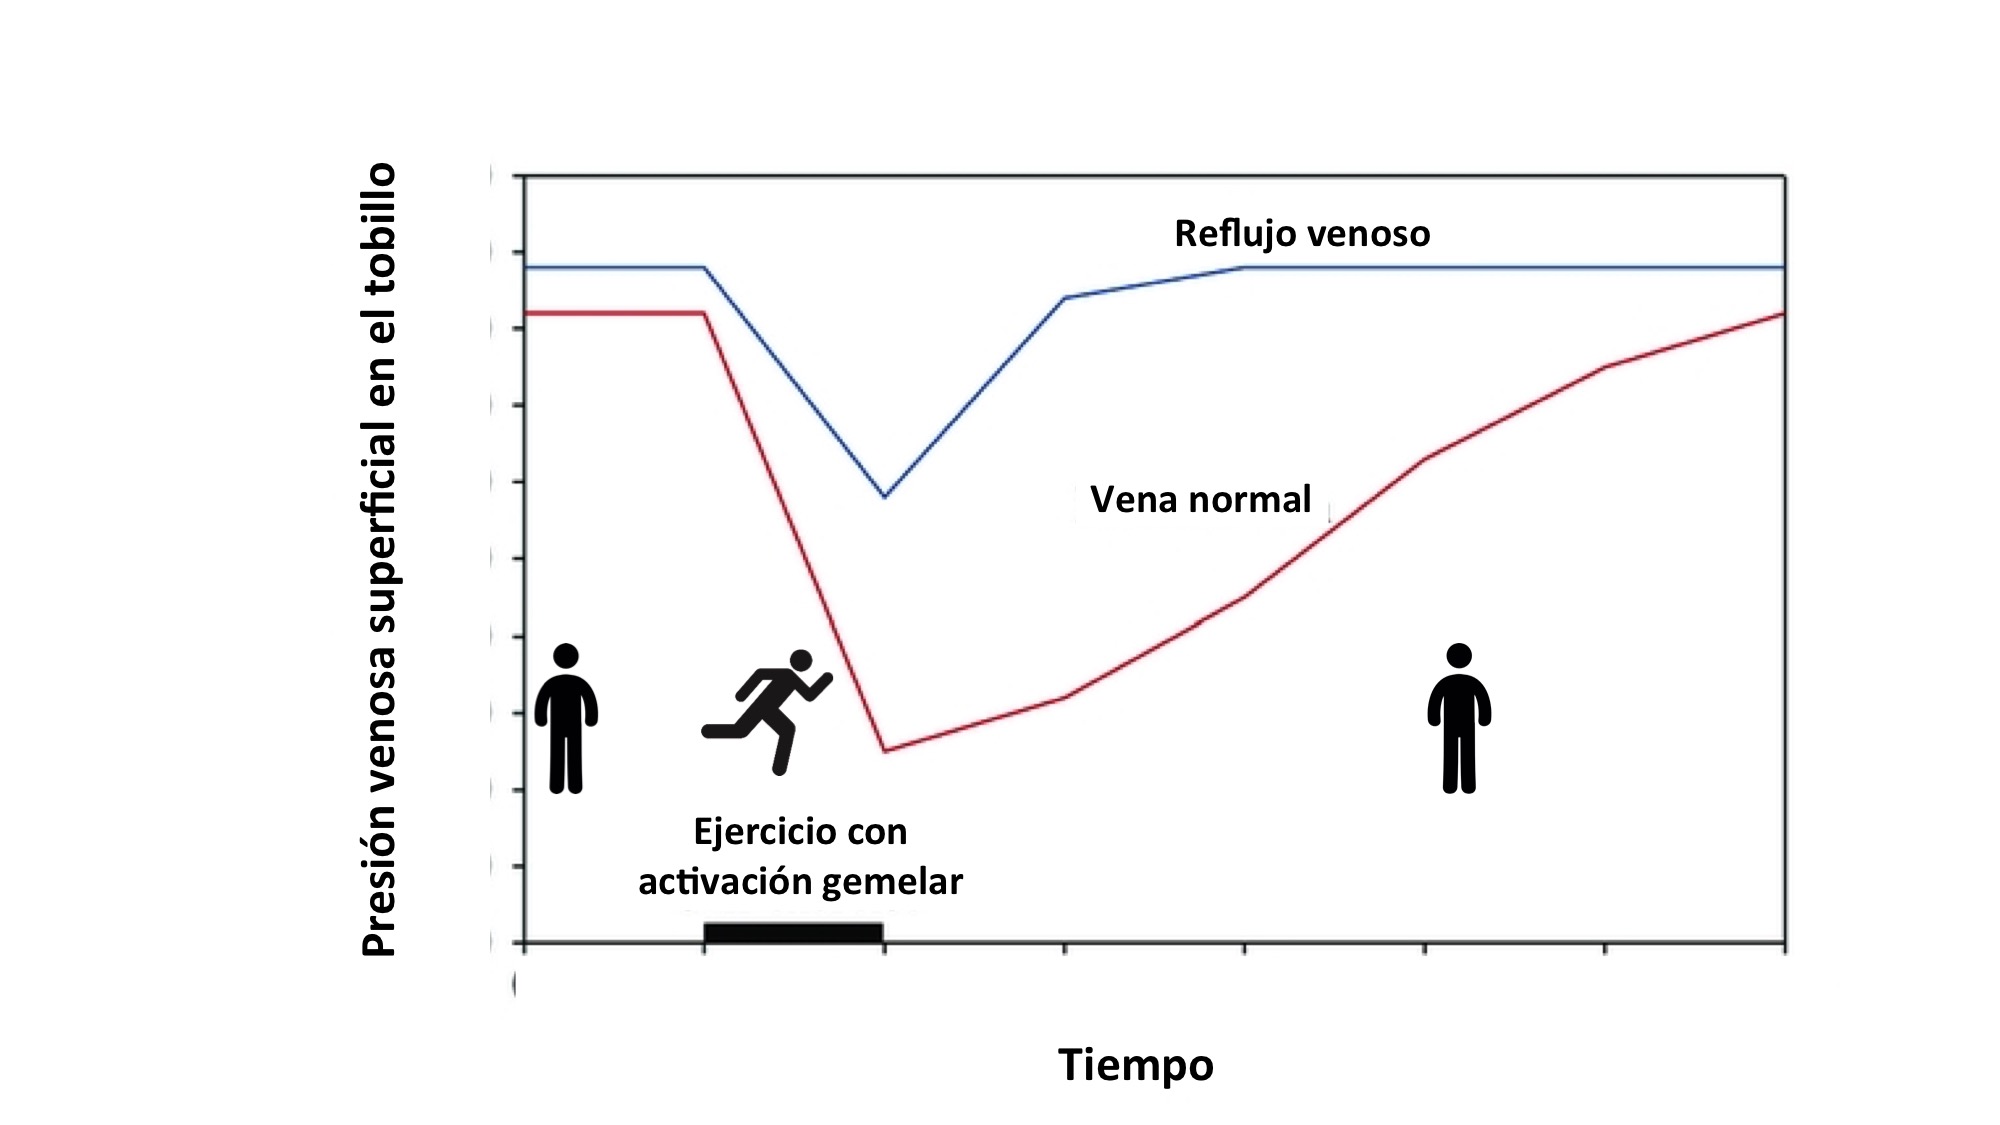 Esquema presión venosa durante el ejercicio (vena normal vs reflujo venoso)